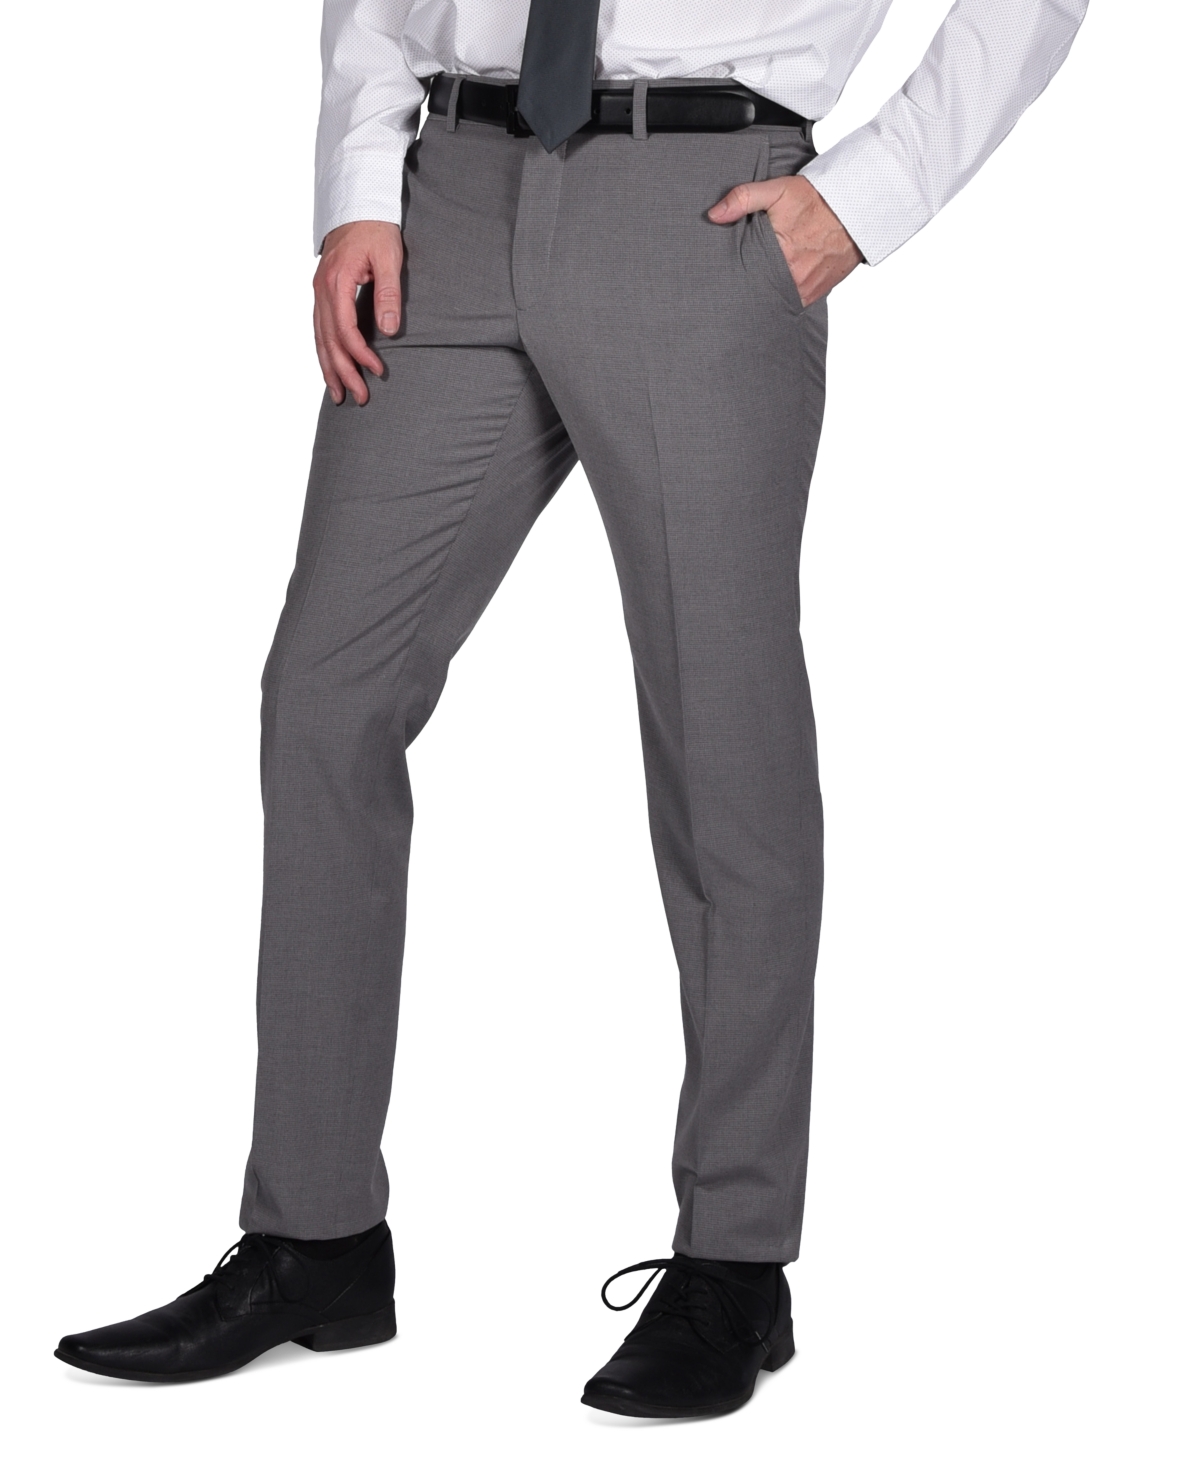 Portfolio Men's Micro-Grid Slim-Fit Stretch Suit Pants - Light Grey